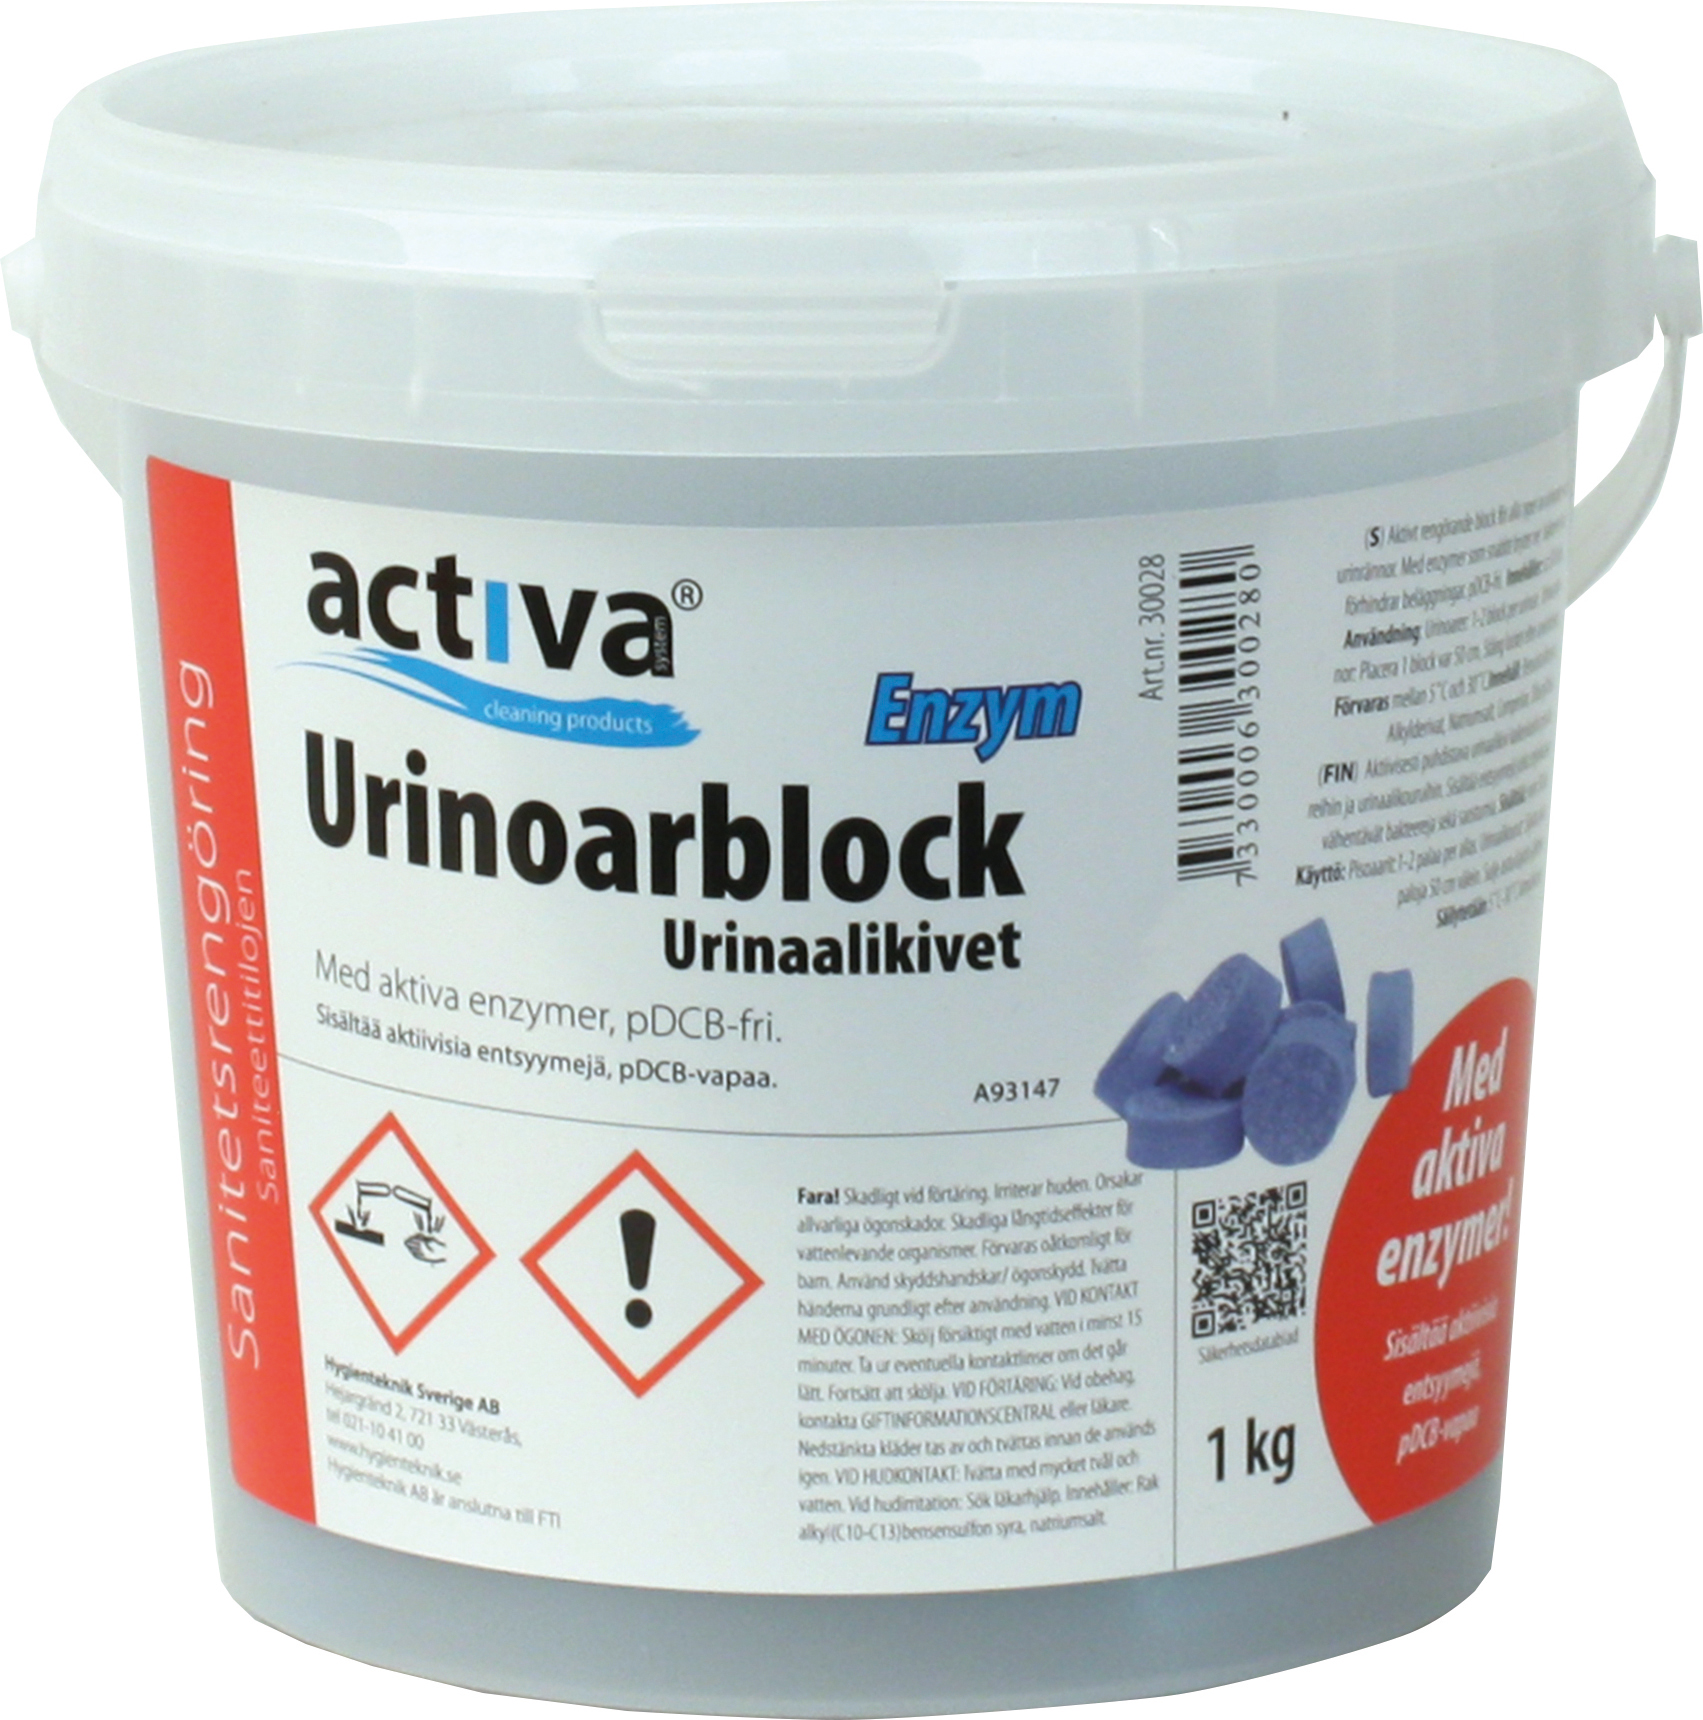 [8555644] Urinoarblock Activa BioEn. 1kg